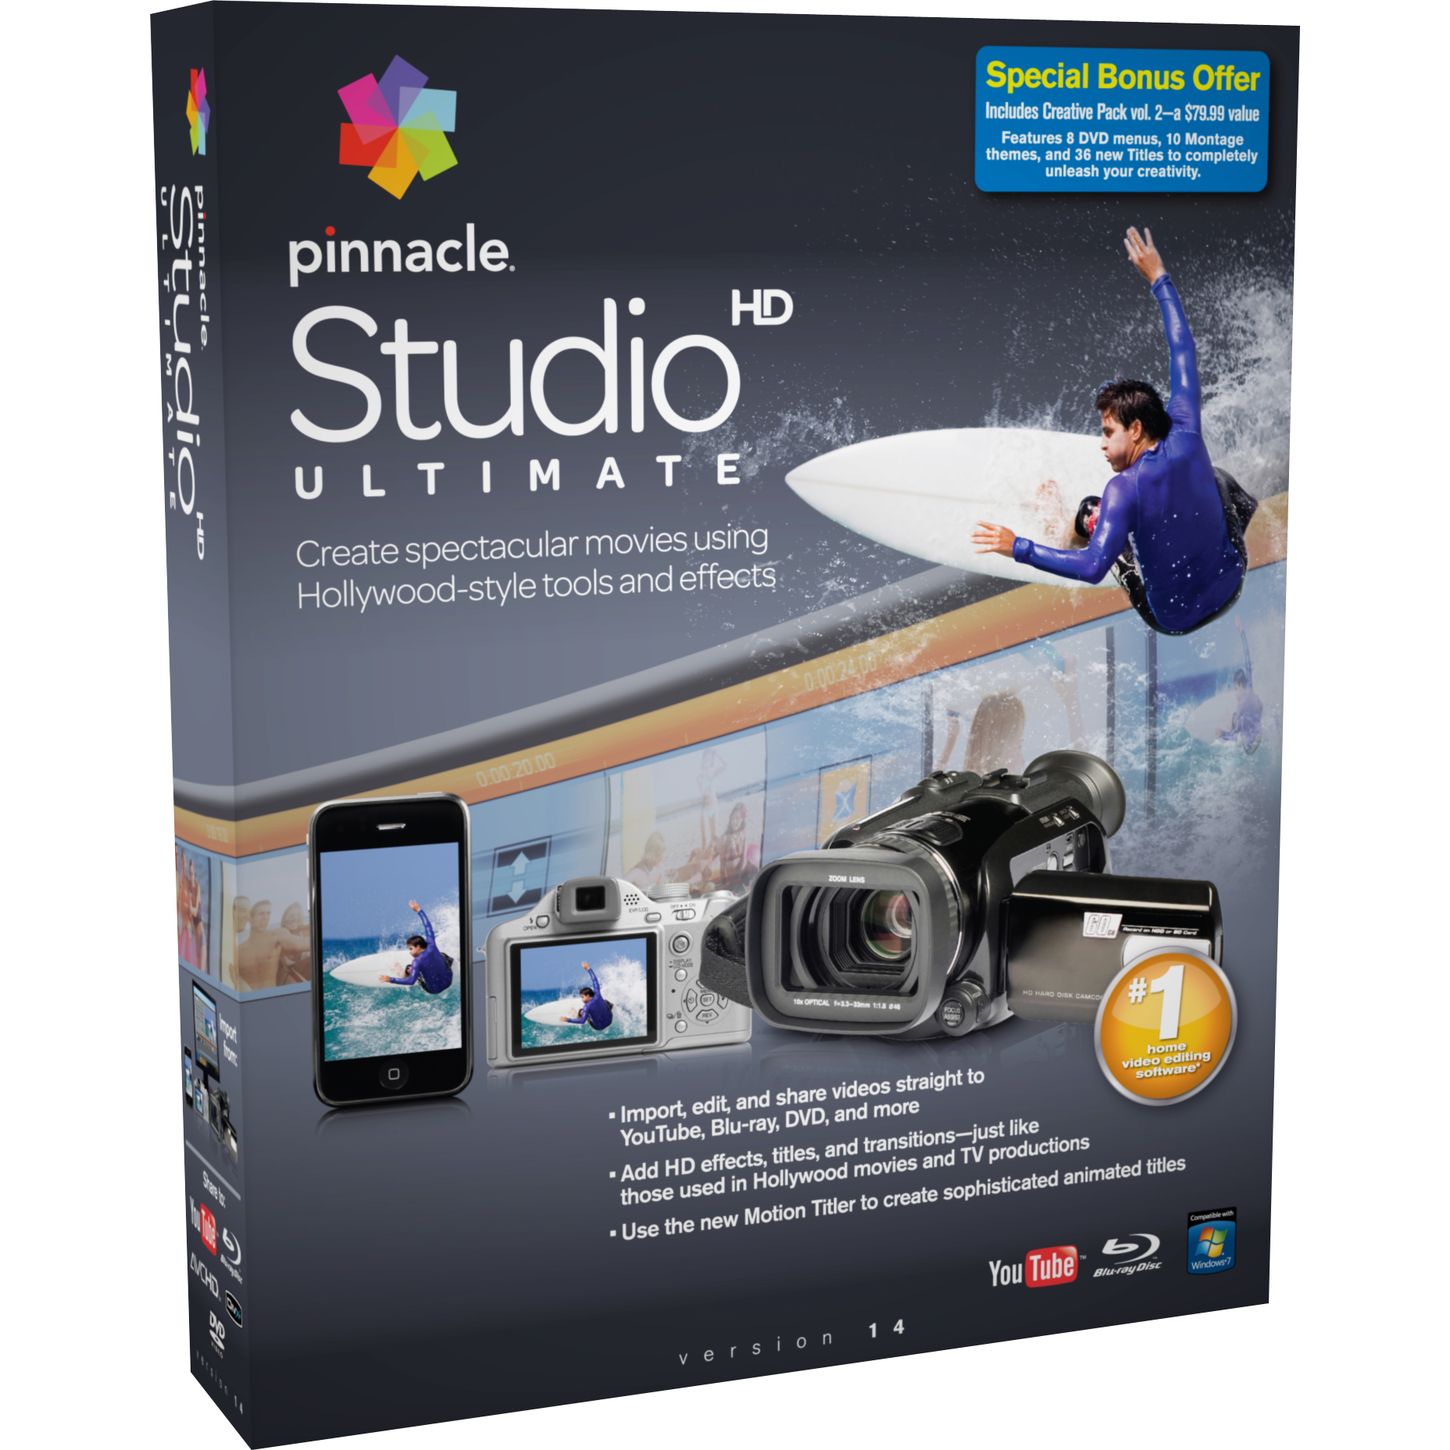 Pinnacle Studio Creative Pack Volume 2 Serial